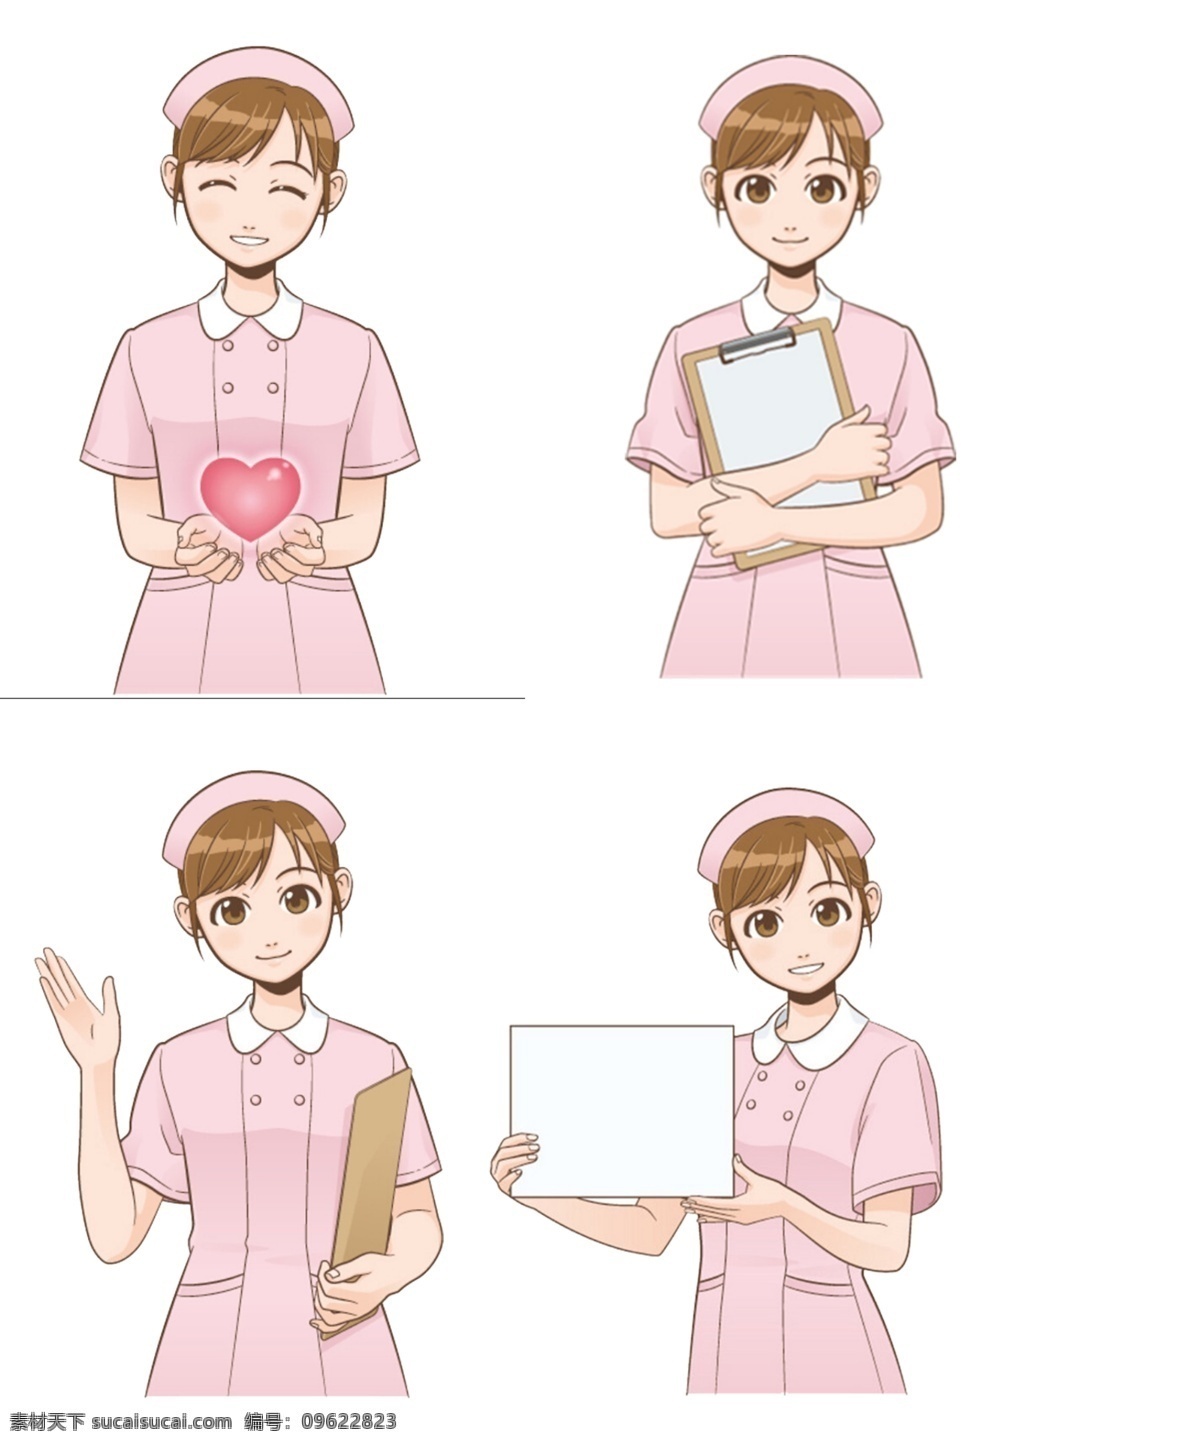 卡通护士 模版下载 卡通 医生 护士 可爱 插画 医院 源文件 护士素材下载 护士模板下载 卡通设计